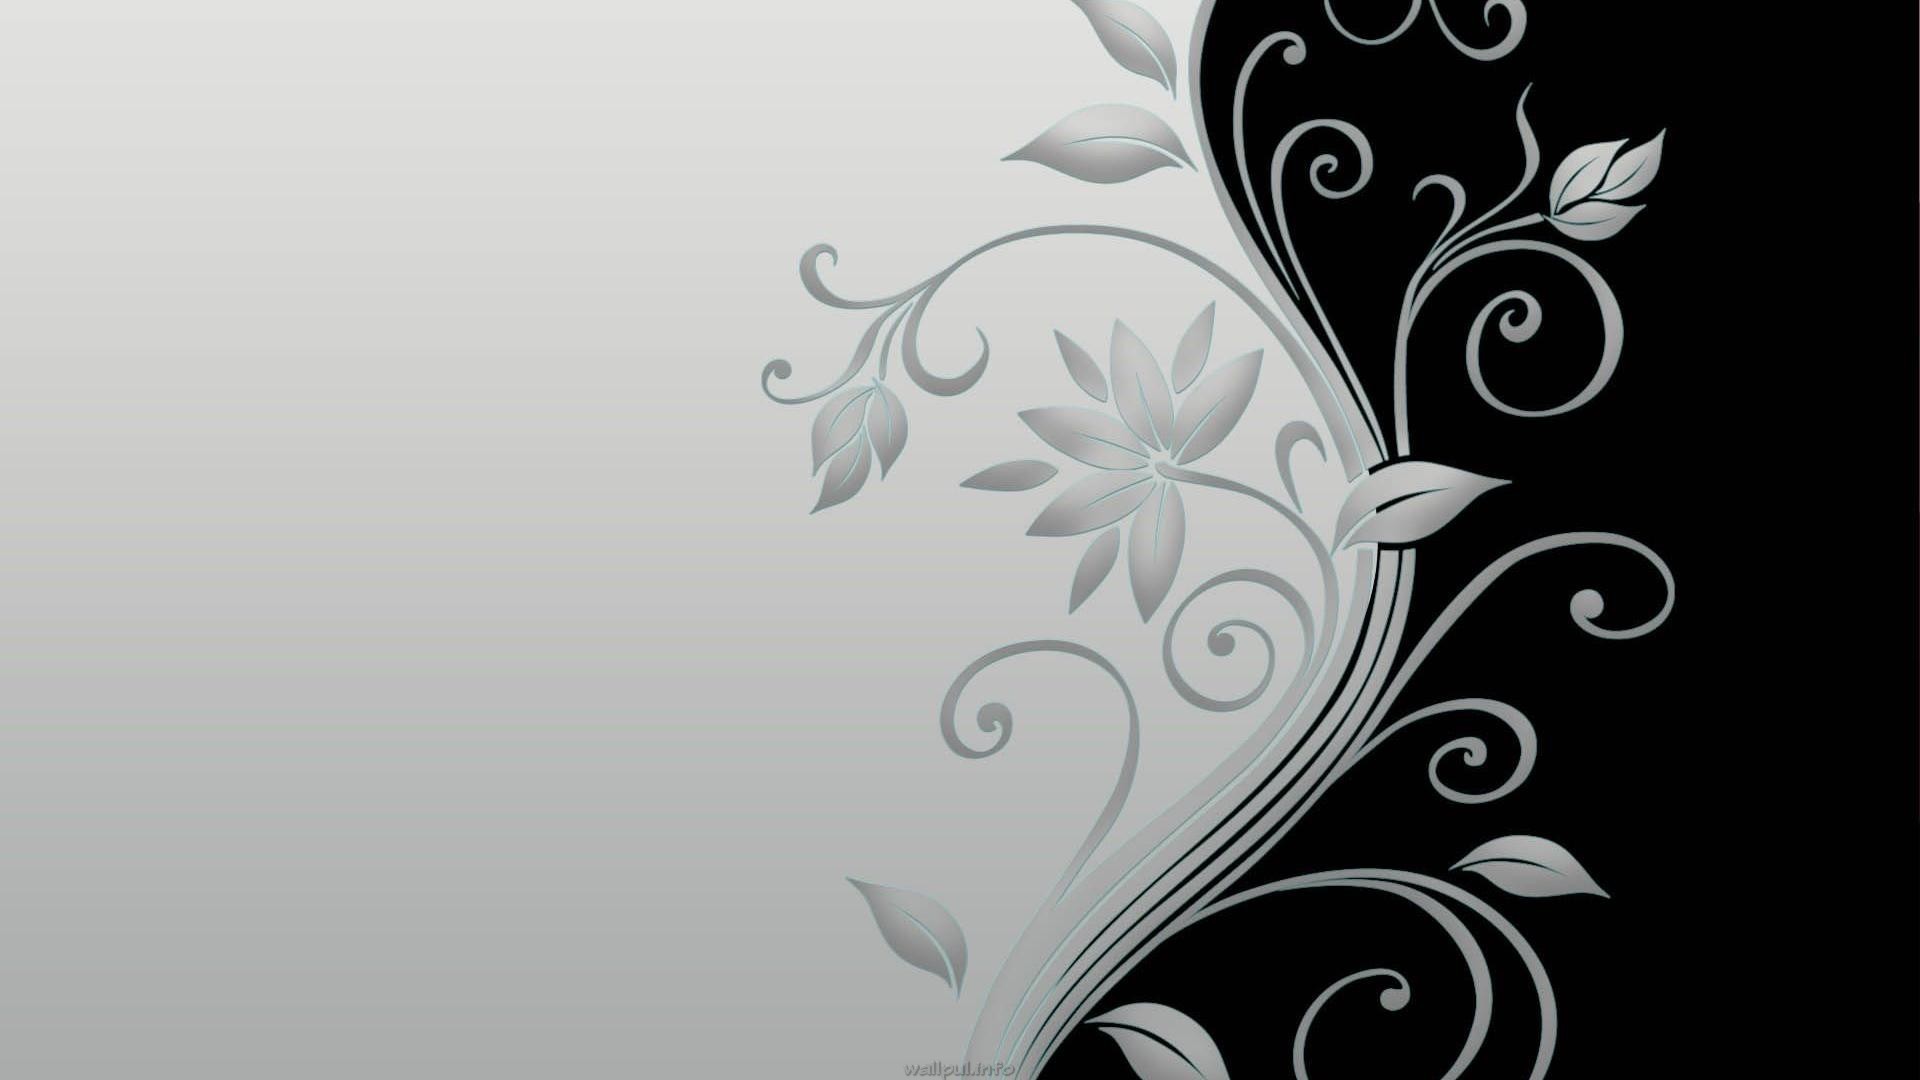 sfondo bianco wallpaper hd 1080p,disegno floreale,ornamento,bianco e nero,modello,sfondo